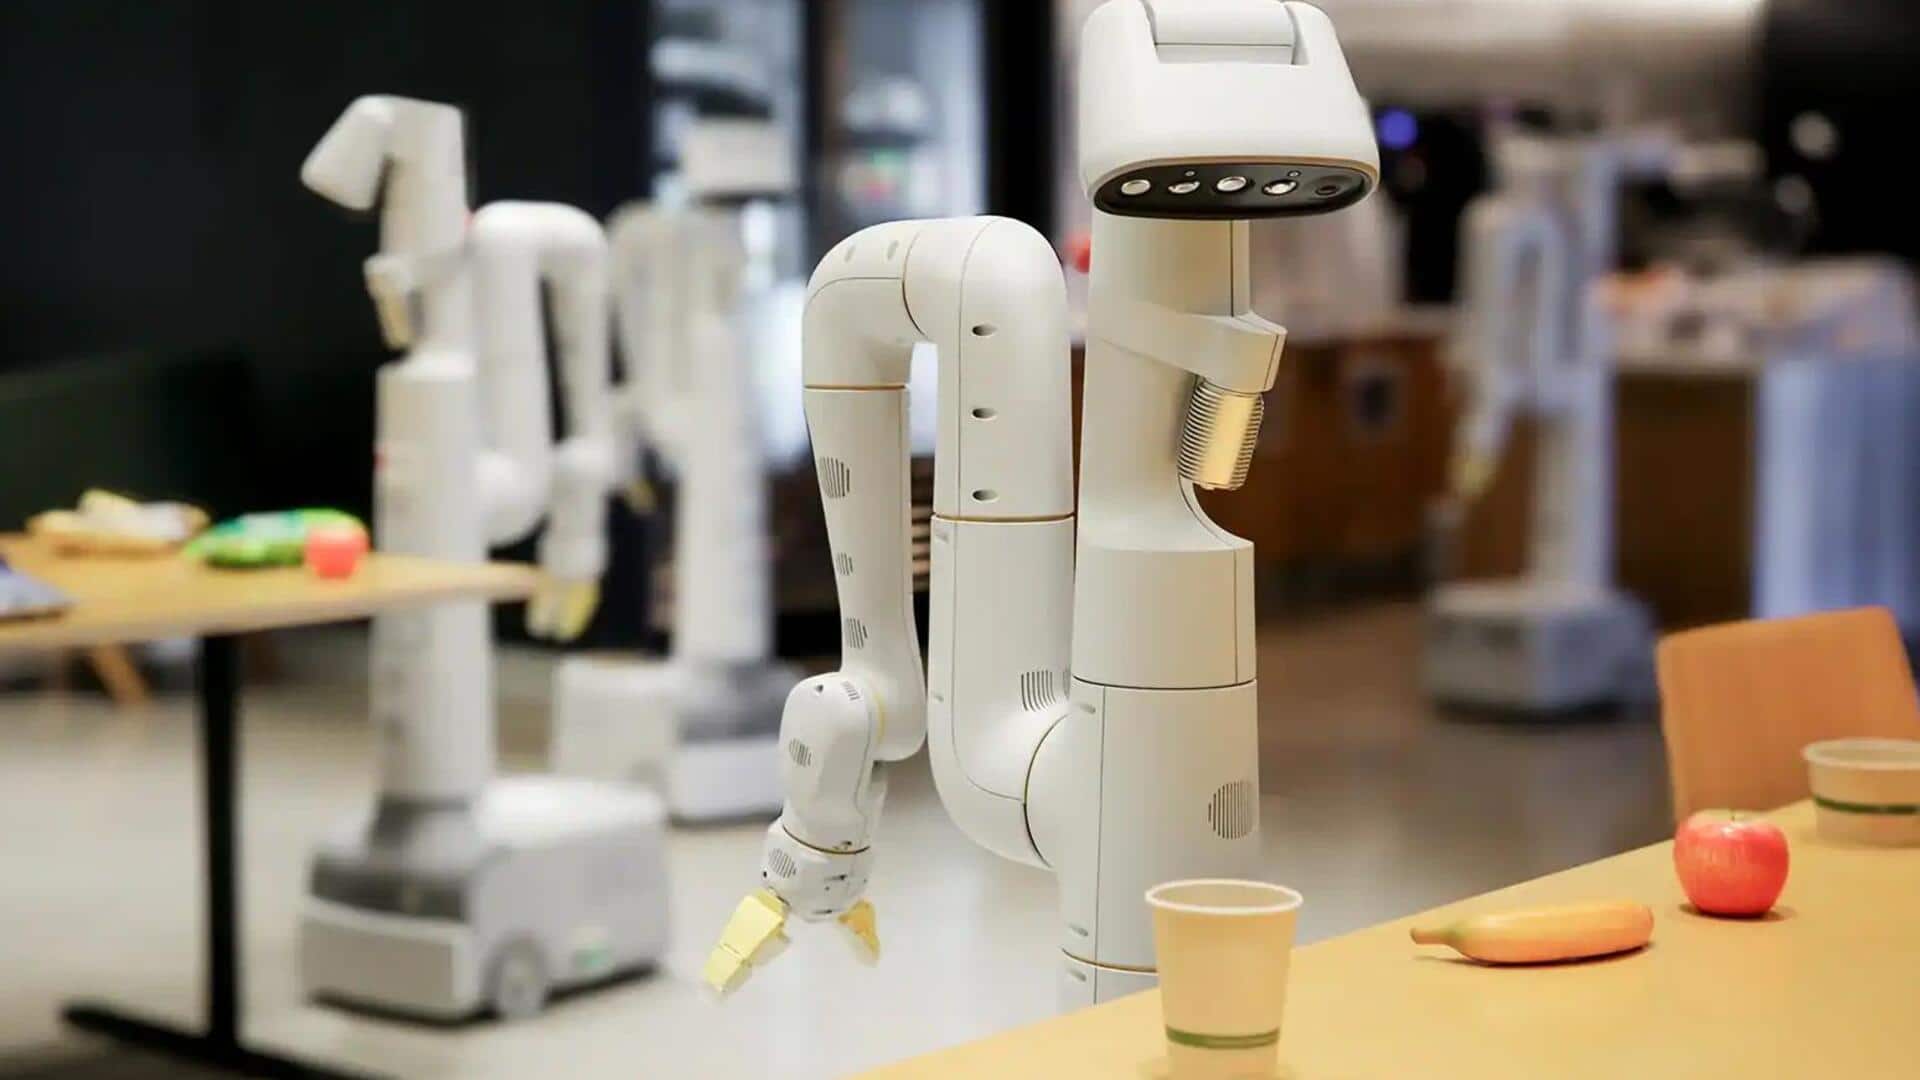 इंसानों को नुकसान नहीं पहुंचाएंगे गूगल के रोबोट, कंपनी ने लिखा 'रोबोट संविधान'